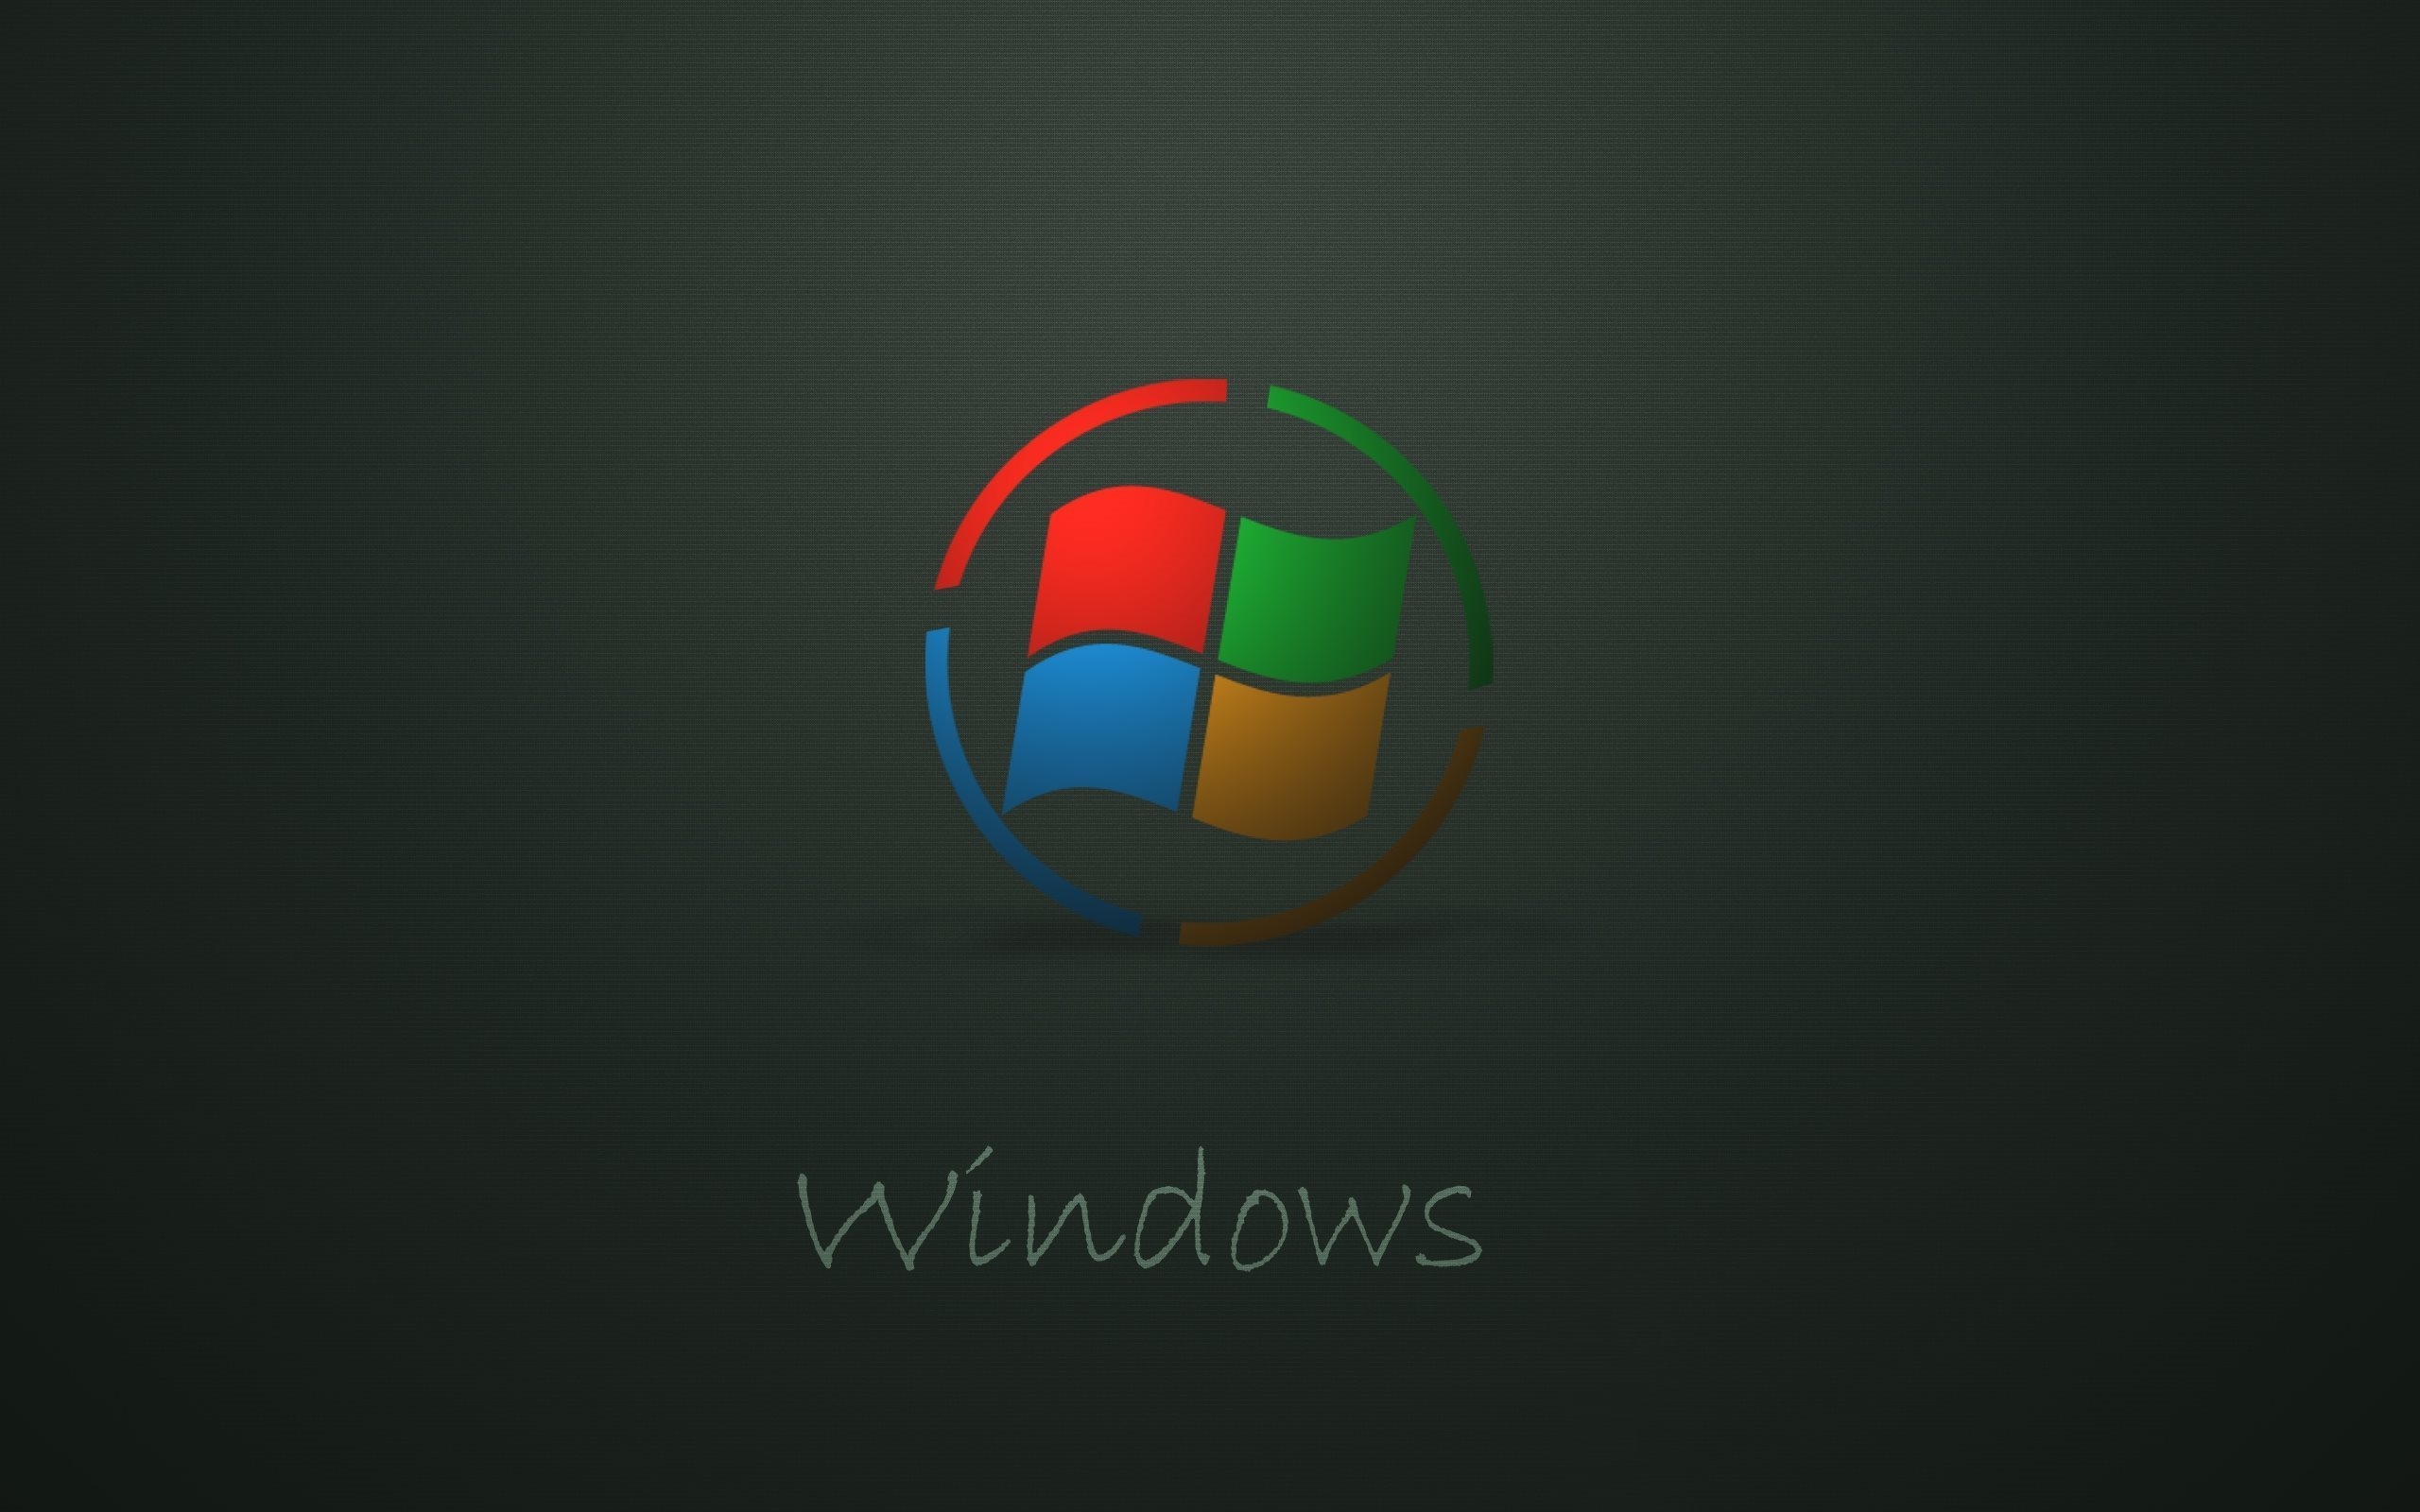 windows-logo-dark-background-2560x1600.jpg